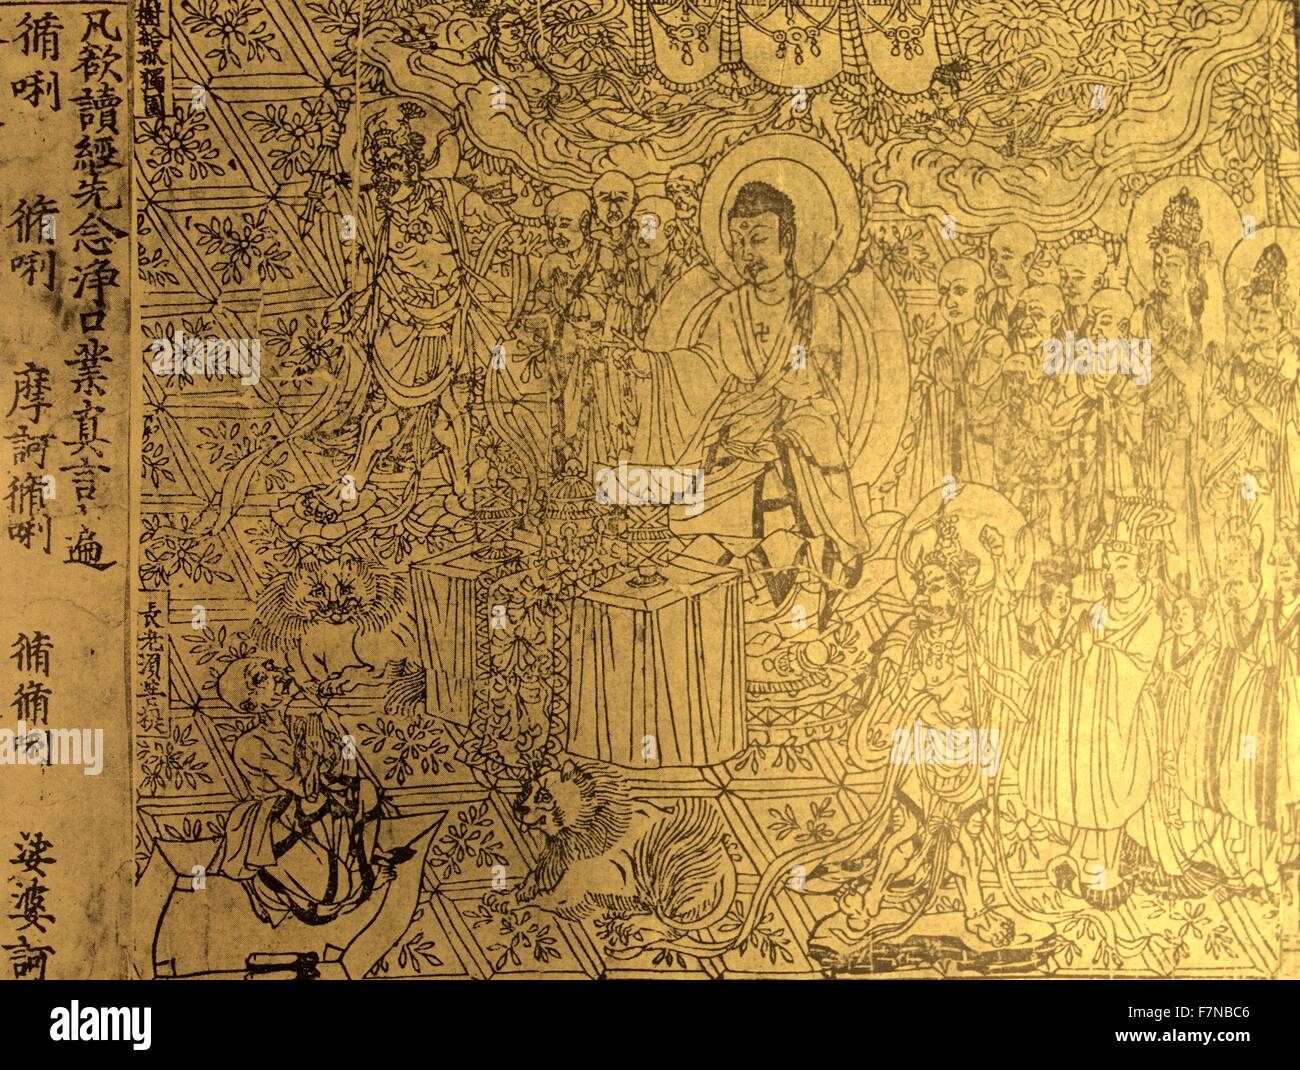 Le Sūtra du diamant. Un sūtra bouddhique Mahāyāna, trouvé parmi les manuscrits de Dunhuang, en Chine, au début du xxe siècle par Aurel Stein. Le Sutra date de l'ANNONCE 868 Banque D'Images